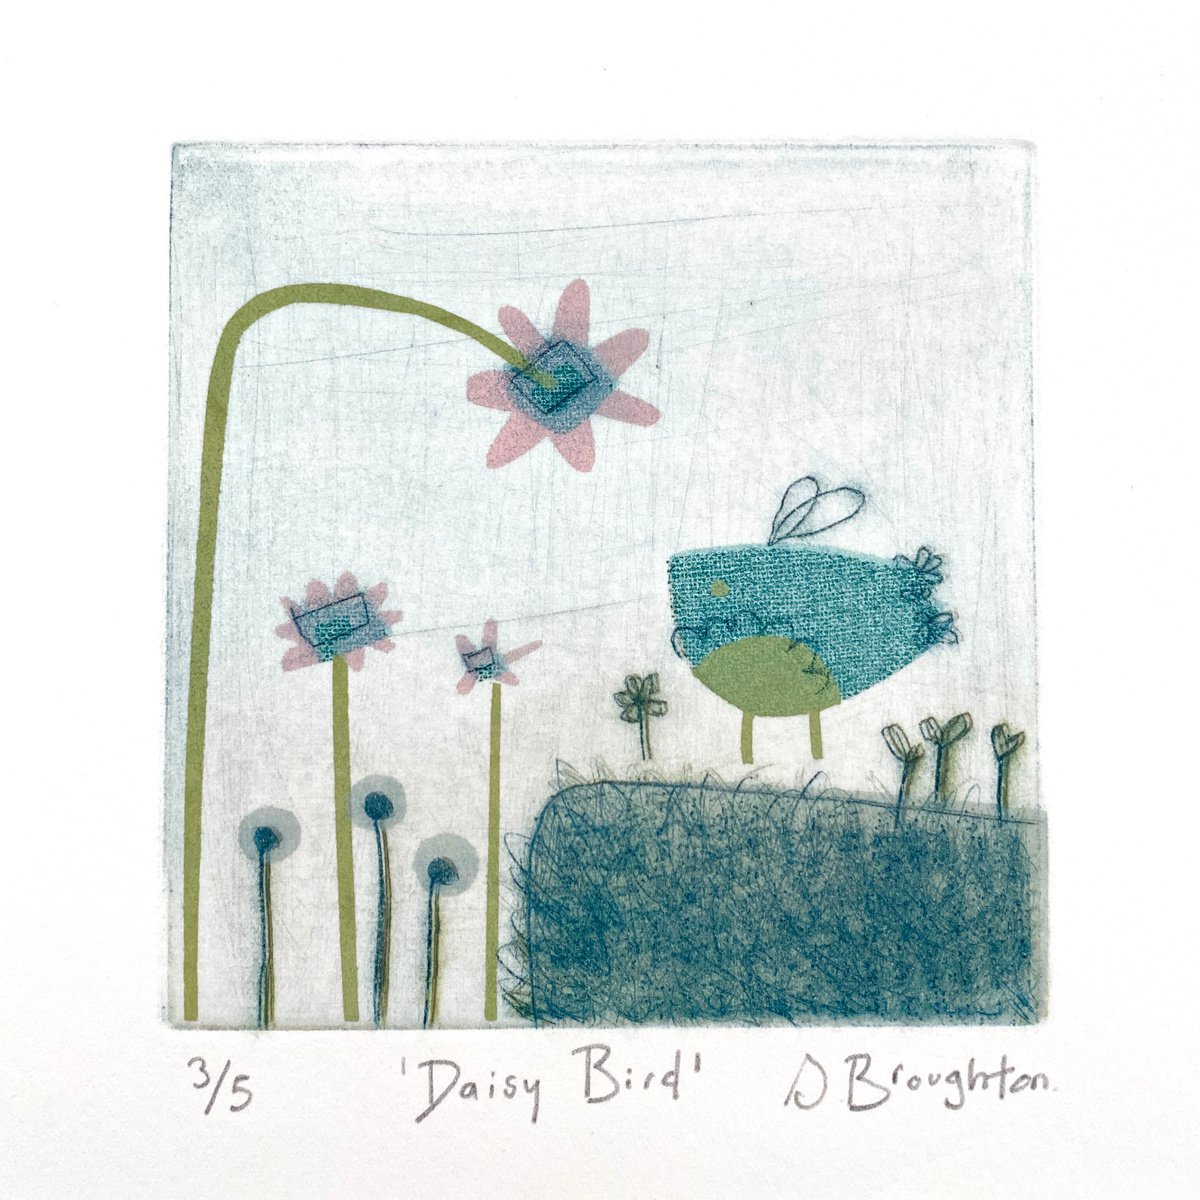 Daisy Bird by Sarah Broughton